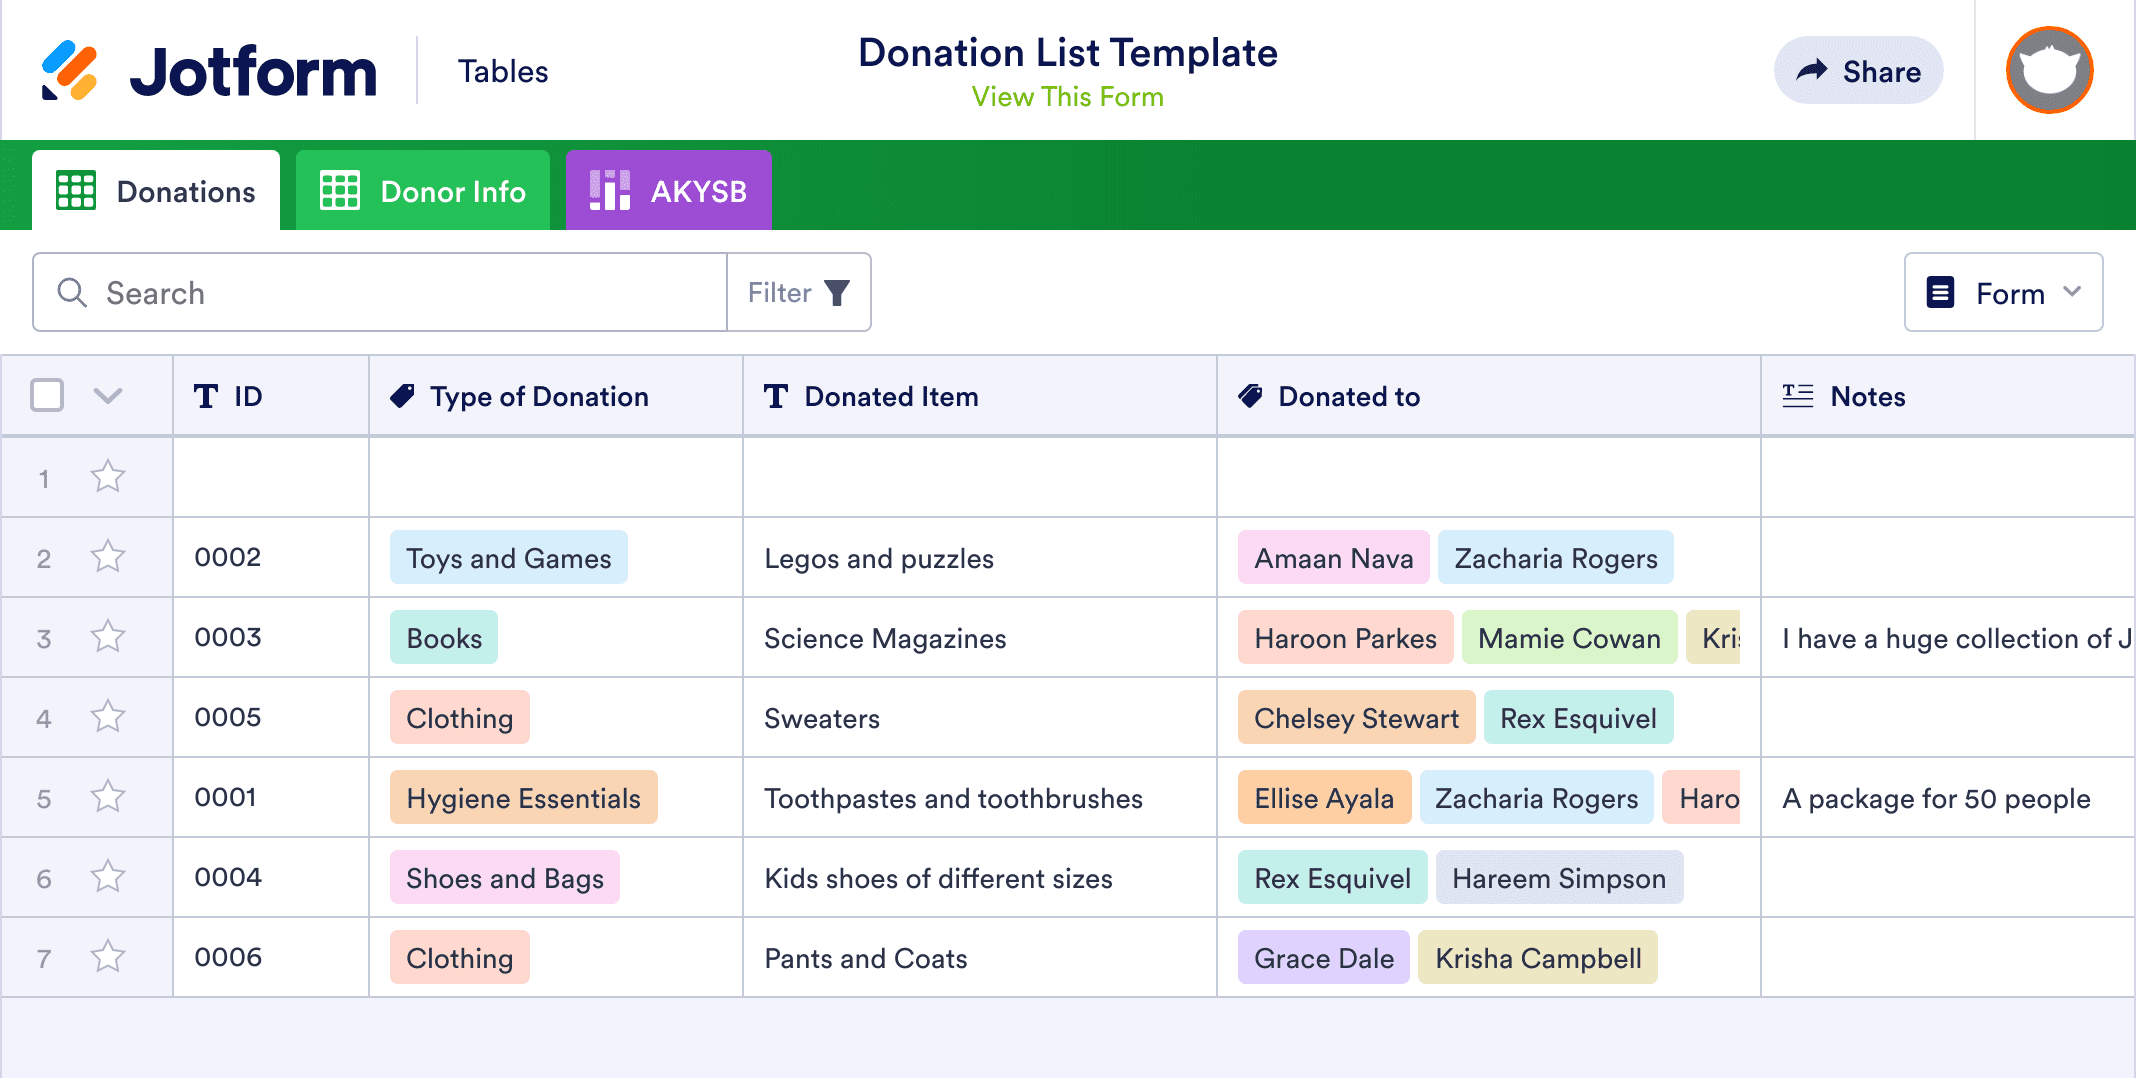 Donation List Template | Jotform Tables